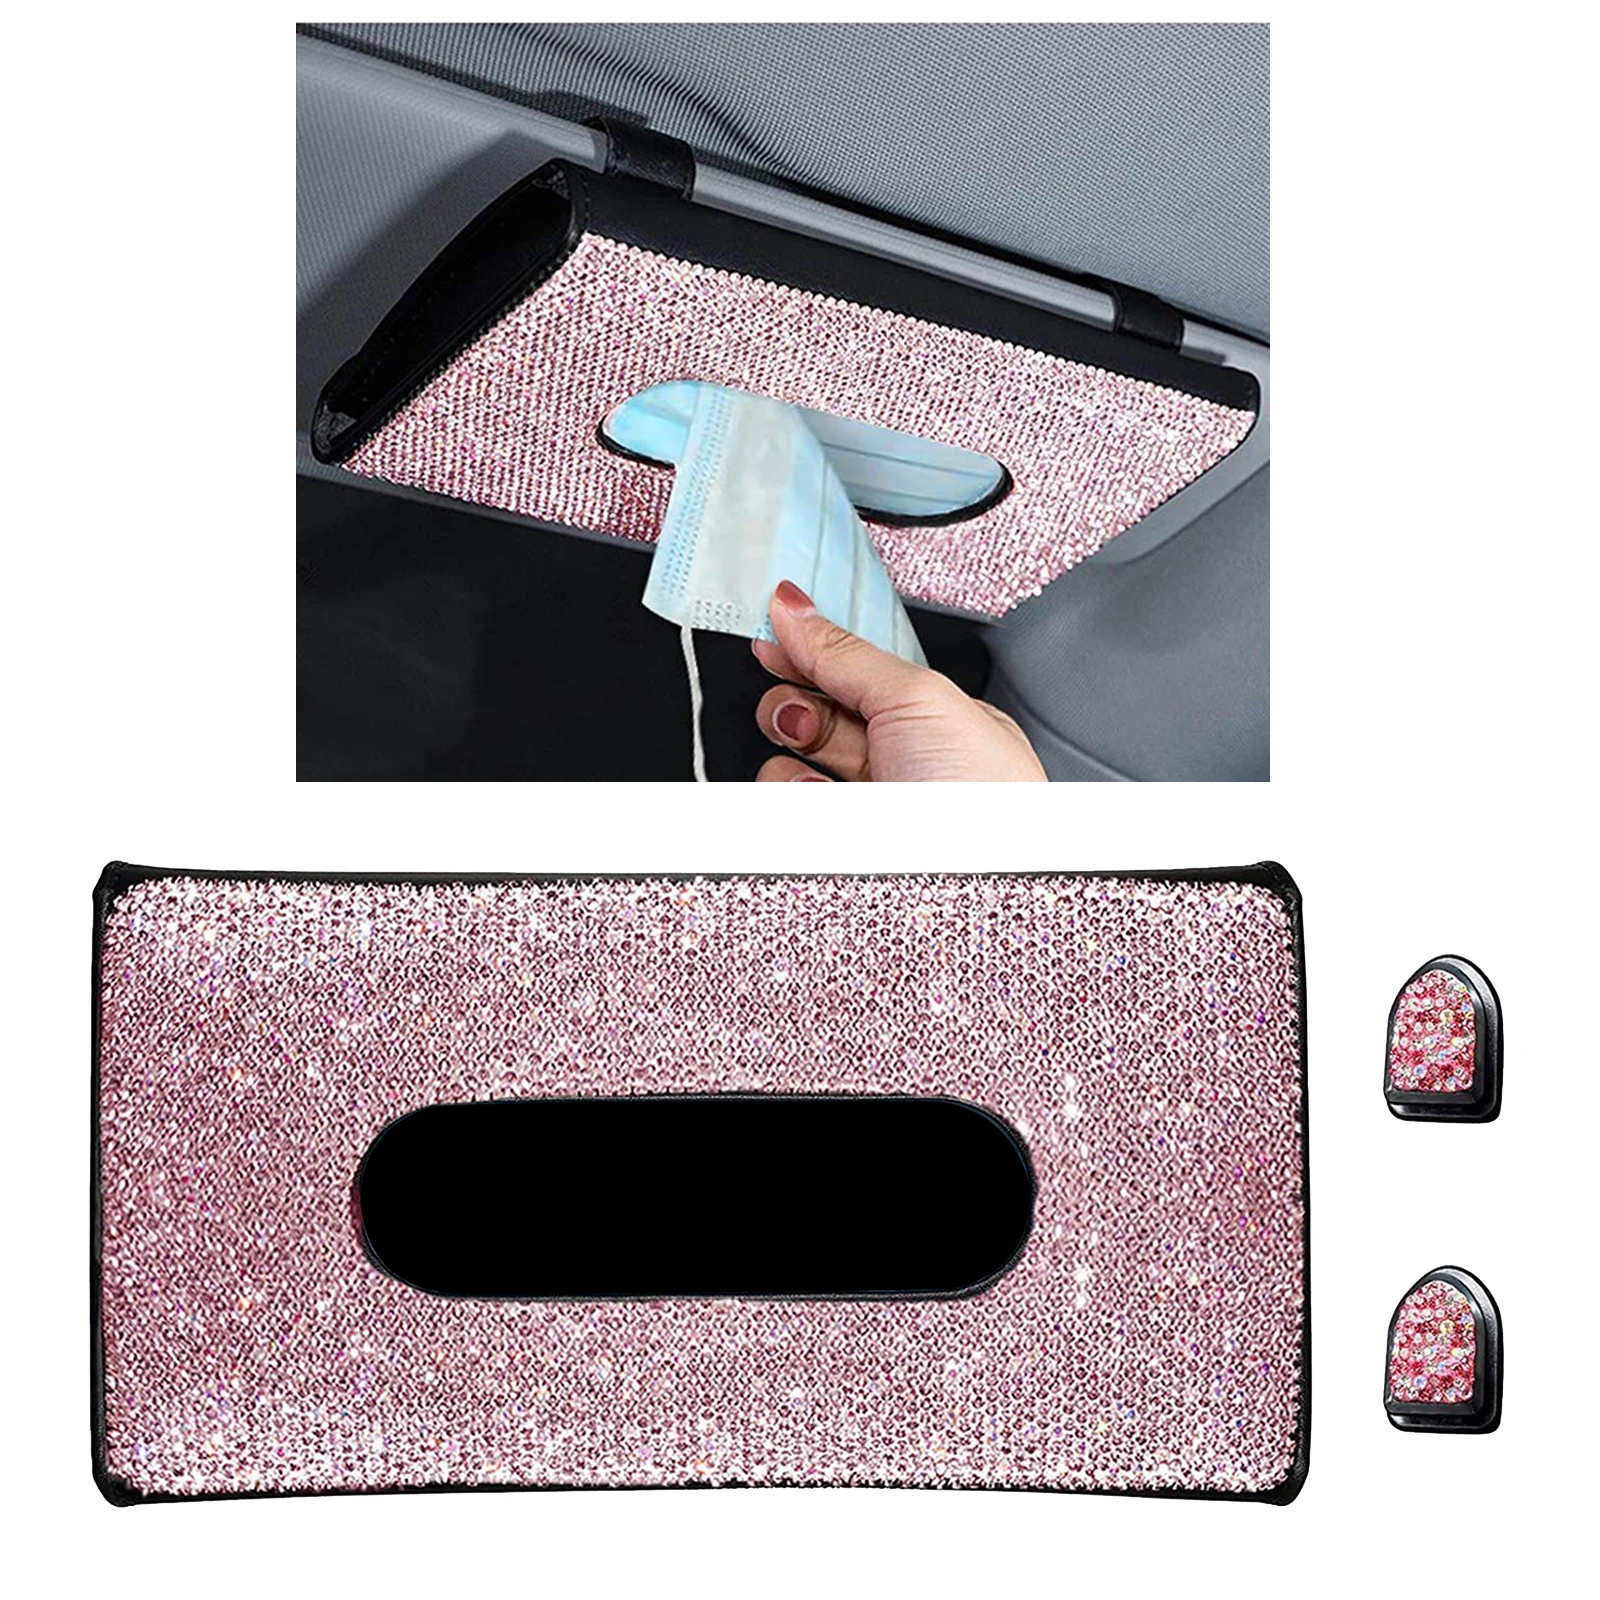 Bling Bling Car Tissue Box Holder for Sun Visor, Truck Sun Visor Tissues Napkin Storage Box with Crystal Diamonds Glitter